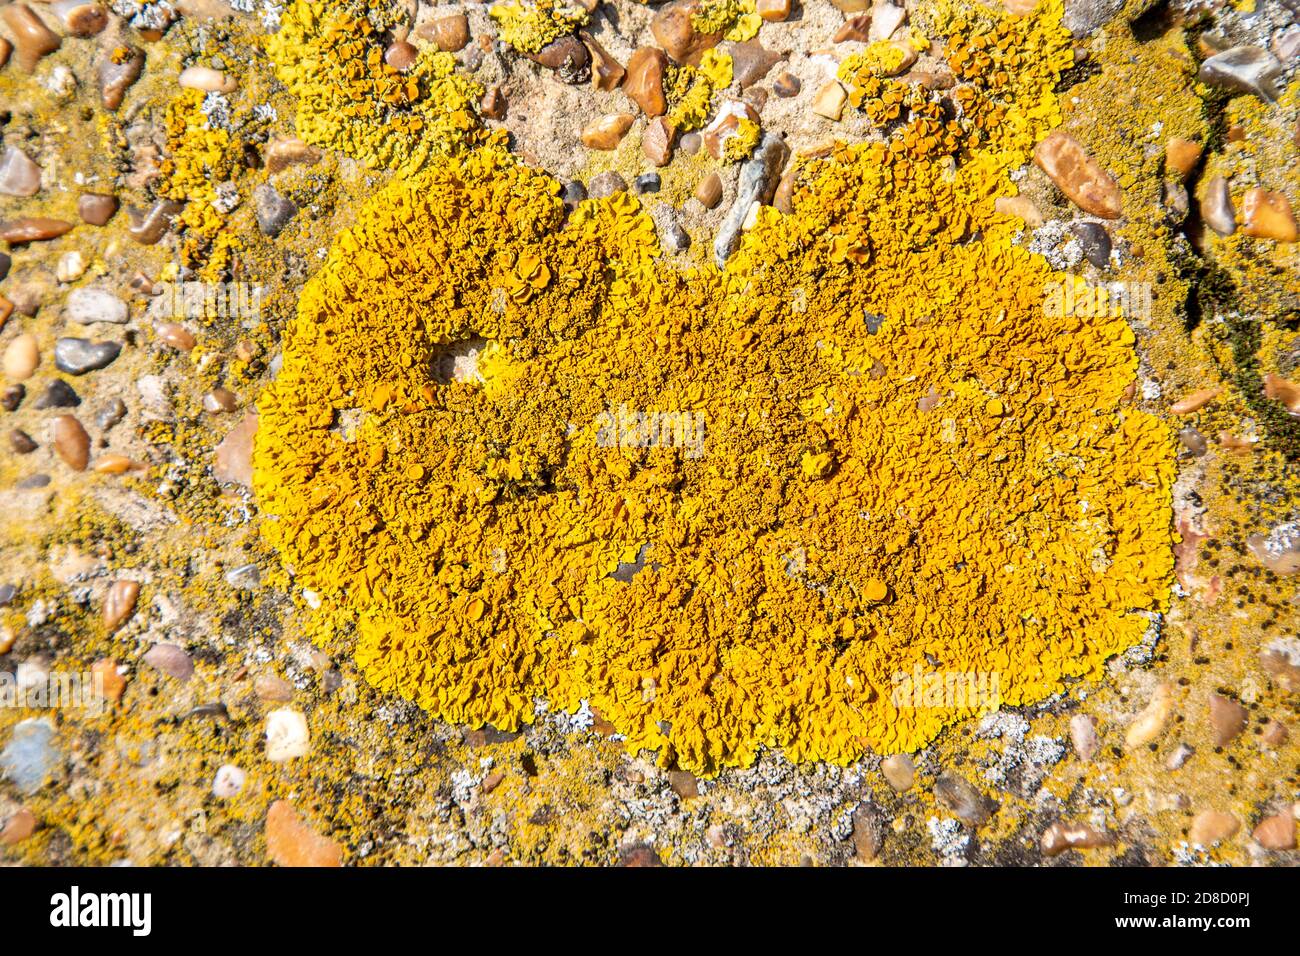 Espèce pionnière lichen de bouclier orange, Xanthoria parietina, surface en béton rugueux de pilbox, Suffolk, Angleterre, Royaume-Uni Banque D'Images